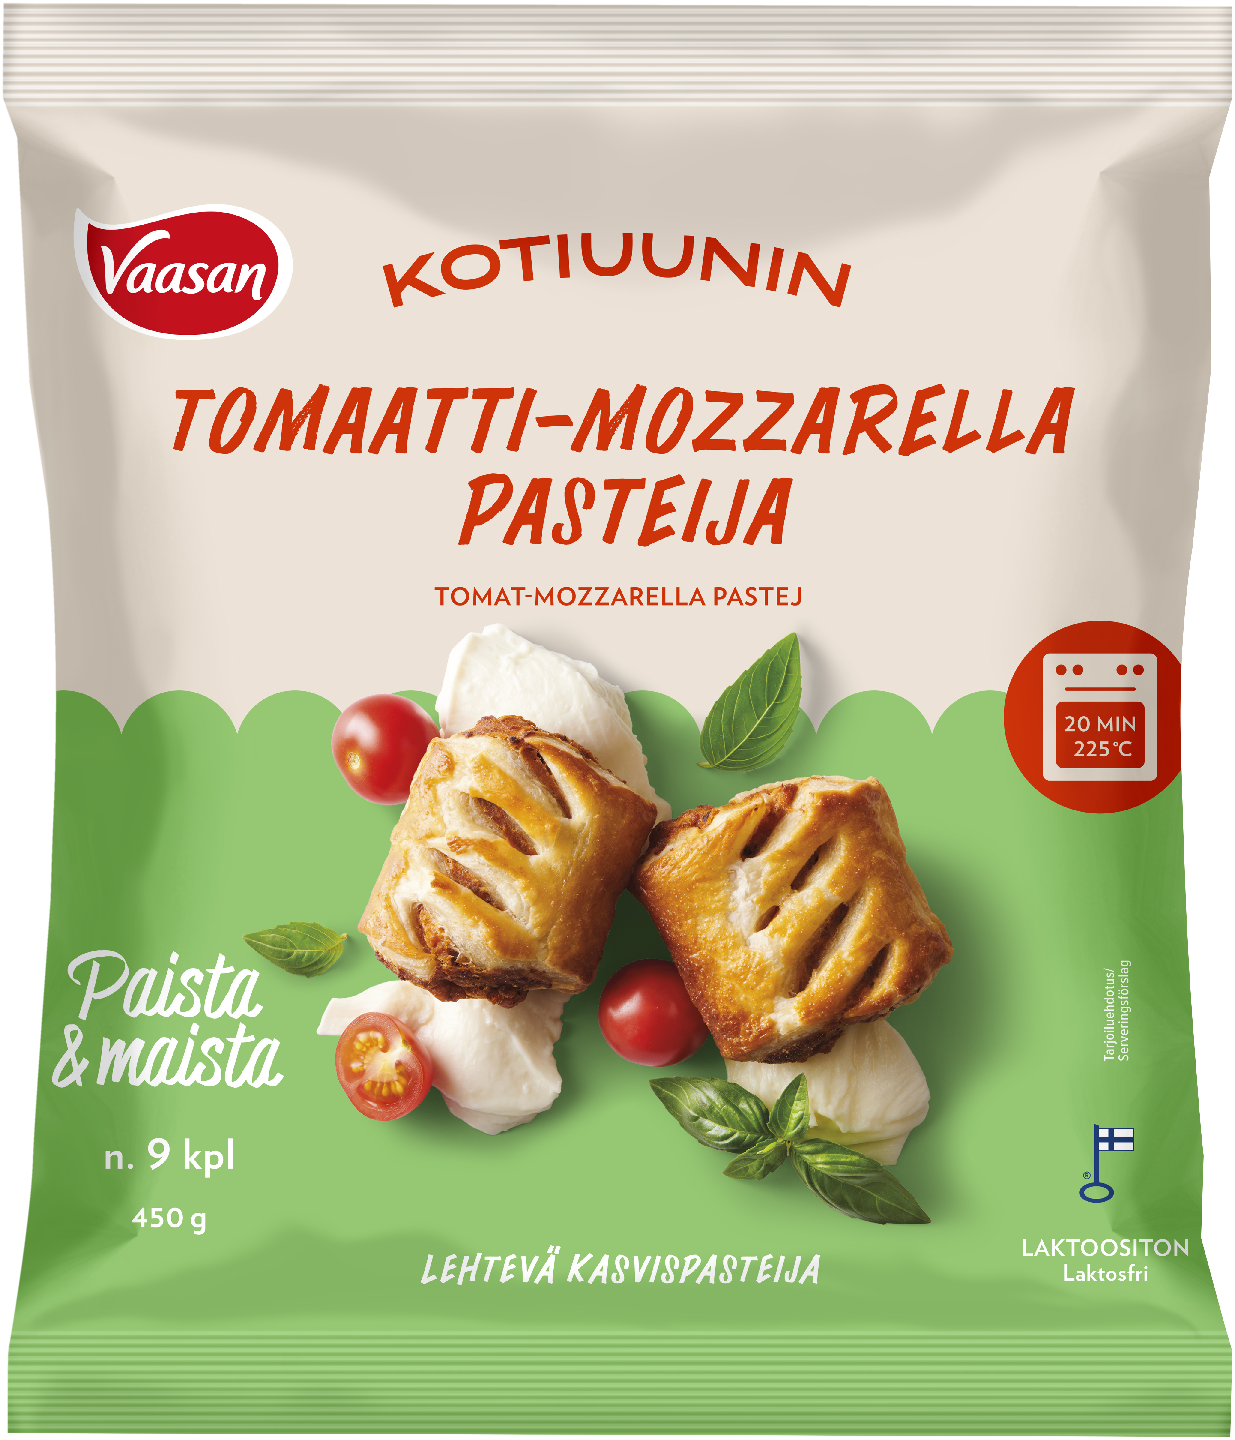 Vaasan Kotiuunin tomaatti-mozzarella pasteija 9kpl/450g